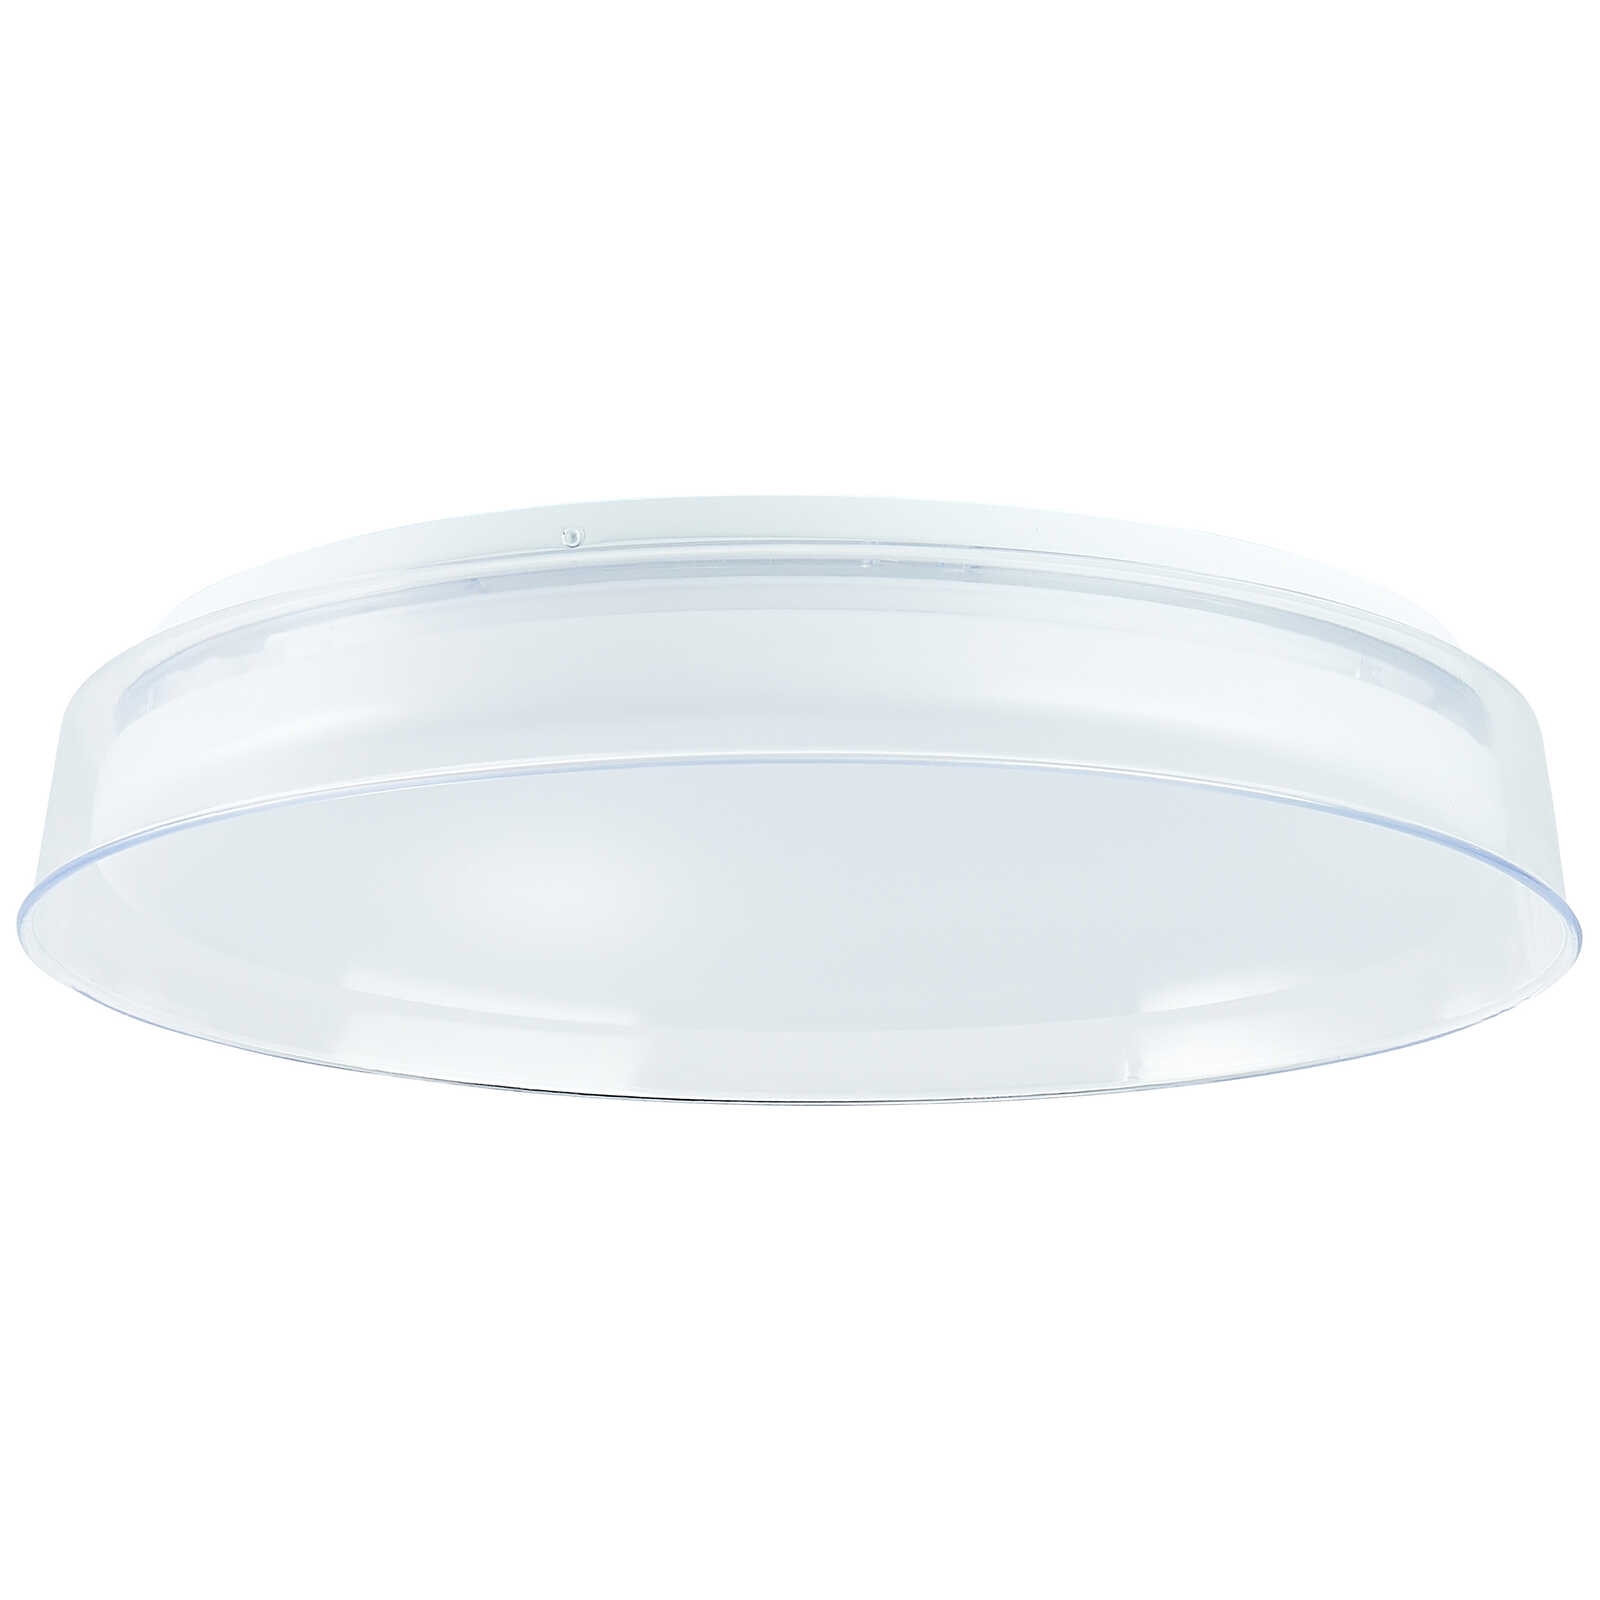             Plastic ceiling light - Lara - White
        